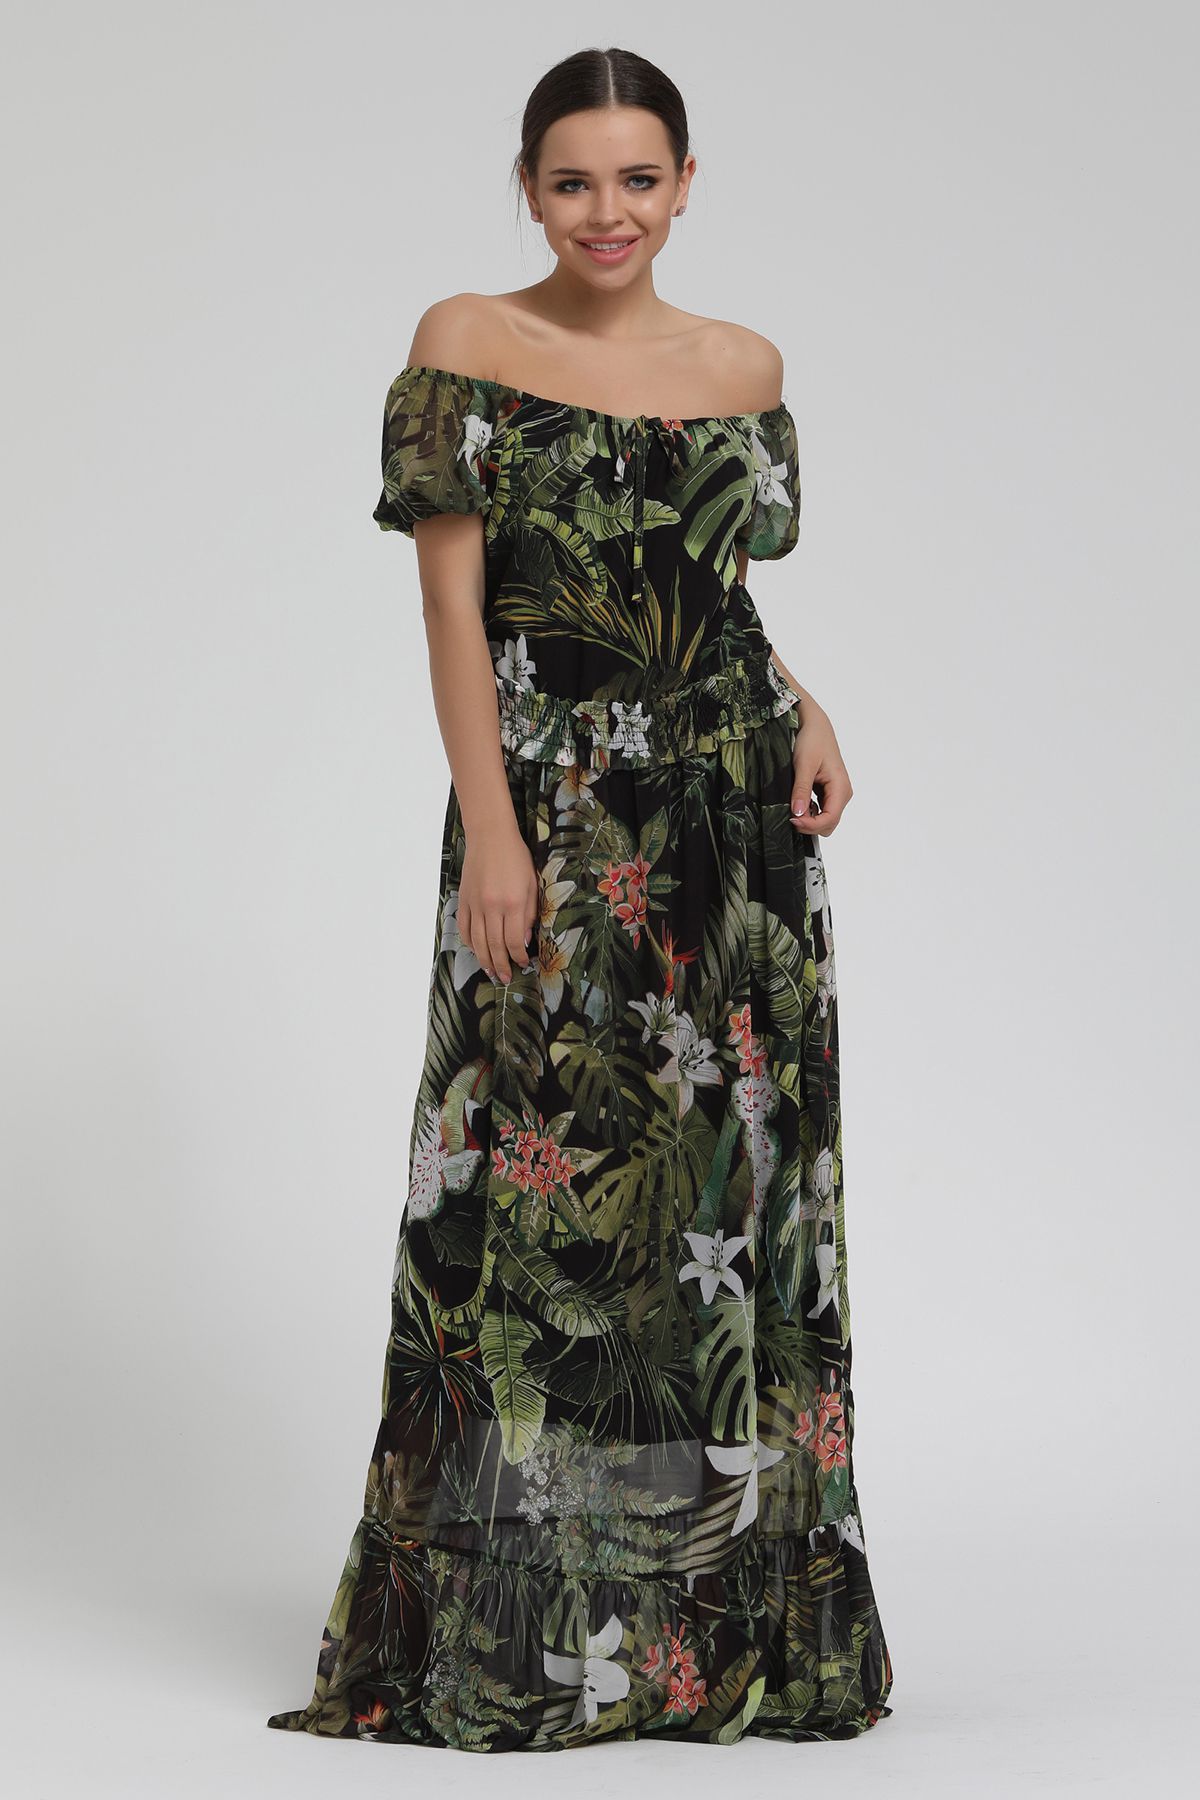 Yaprak Desenli Açık Omuzlu Uzun Şifon Elbise resmi